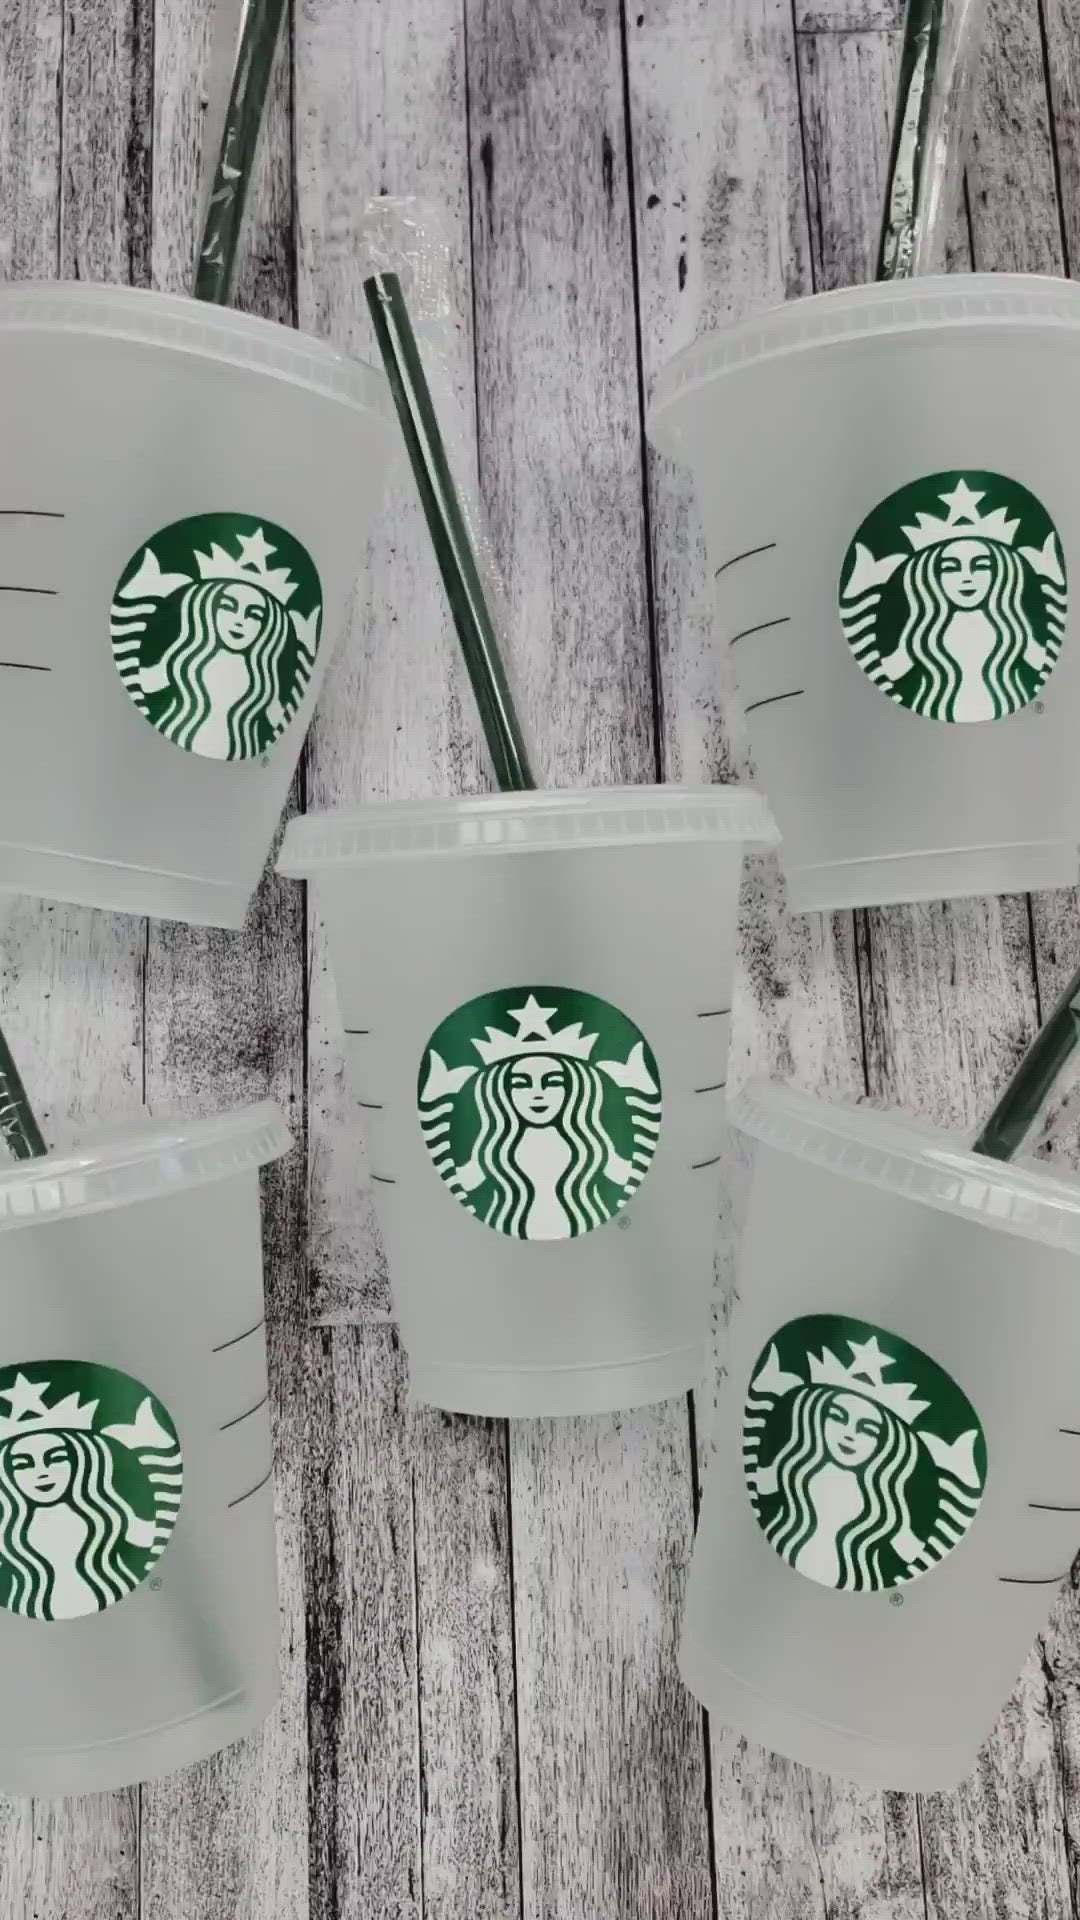 Mini Starbucks Cups 